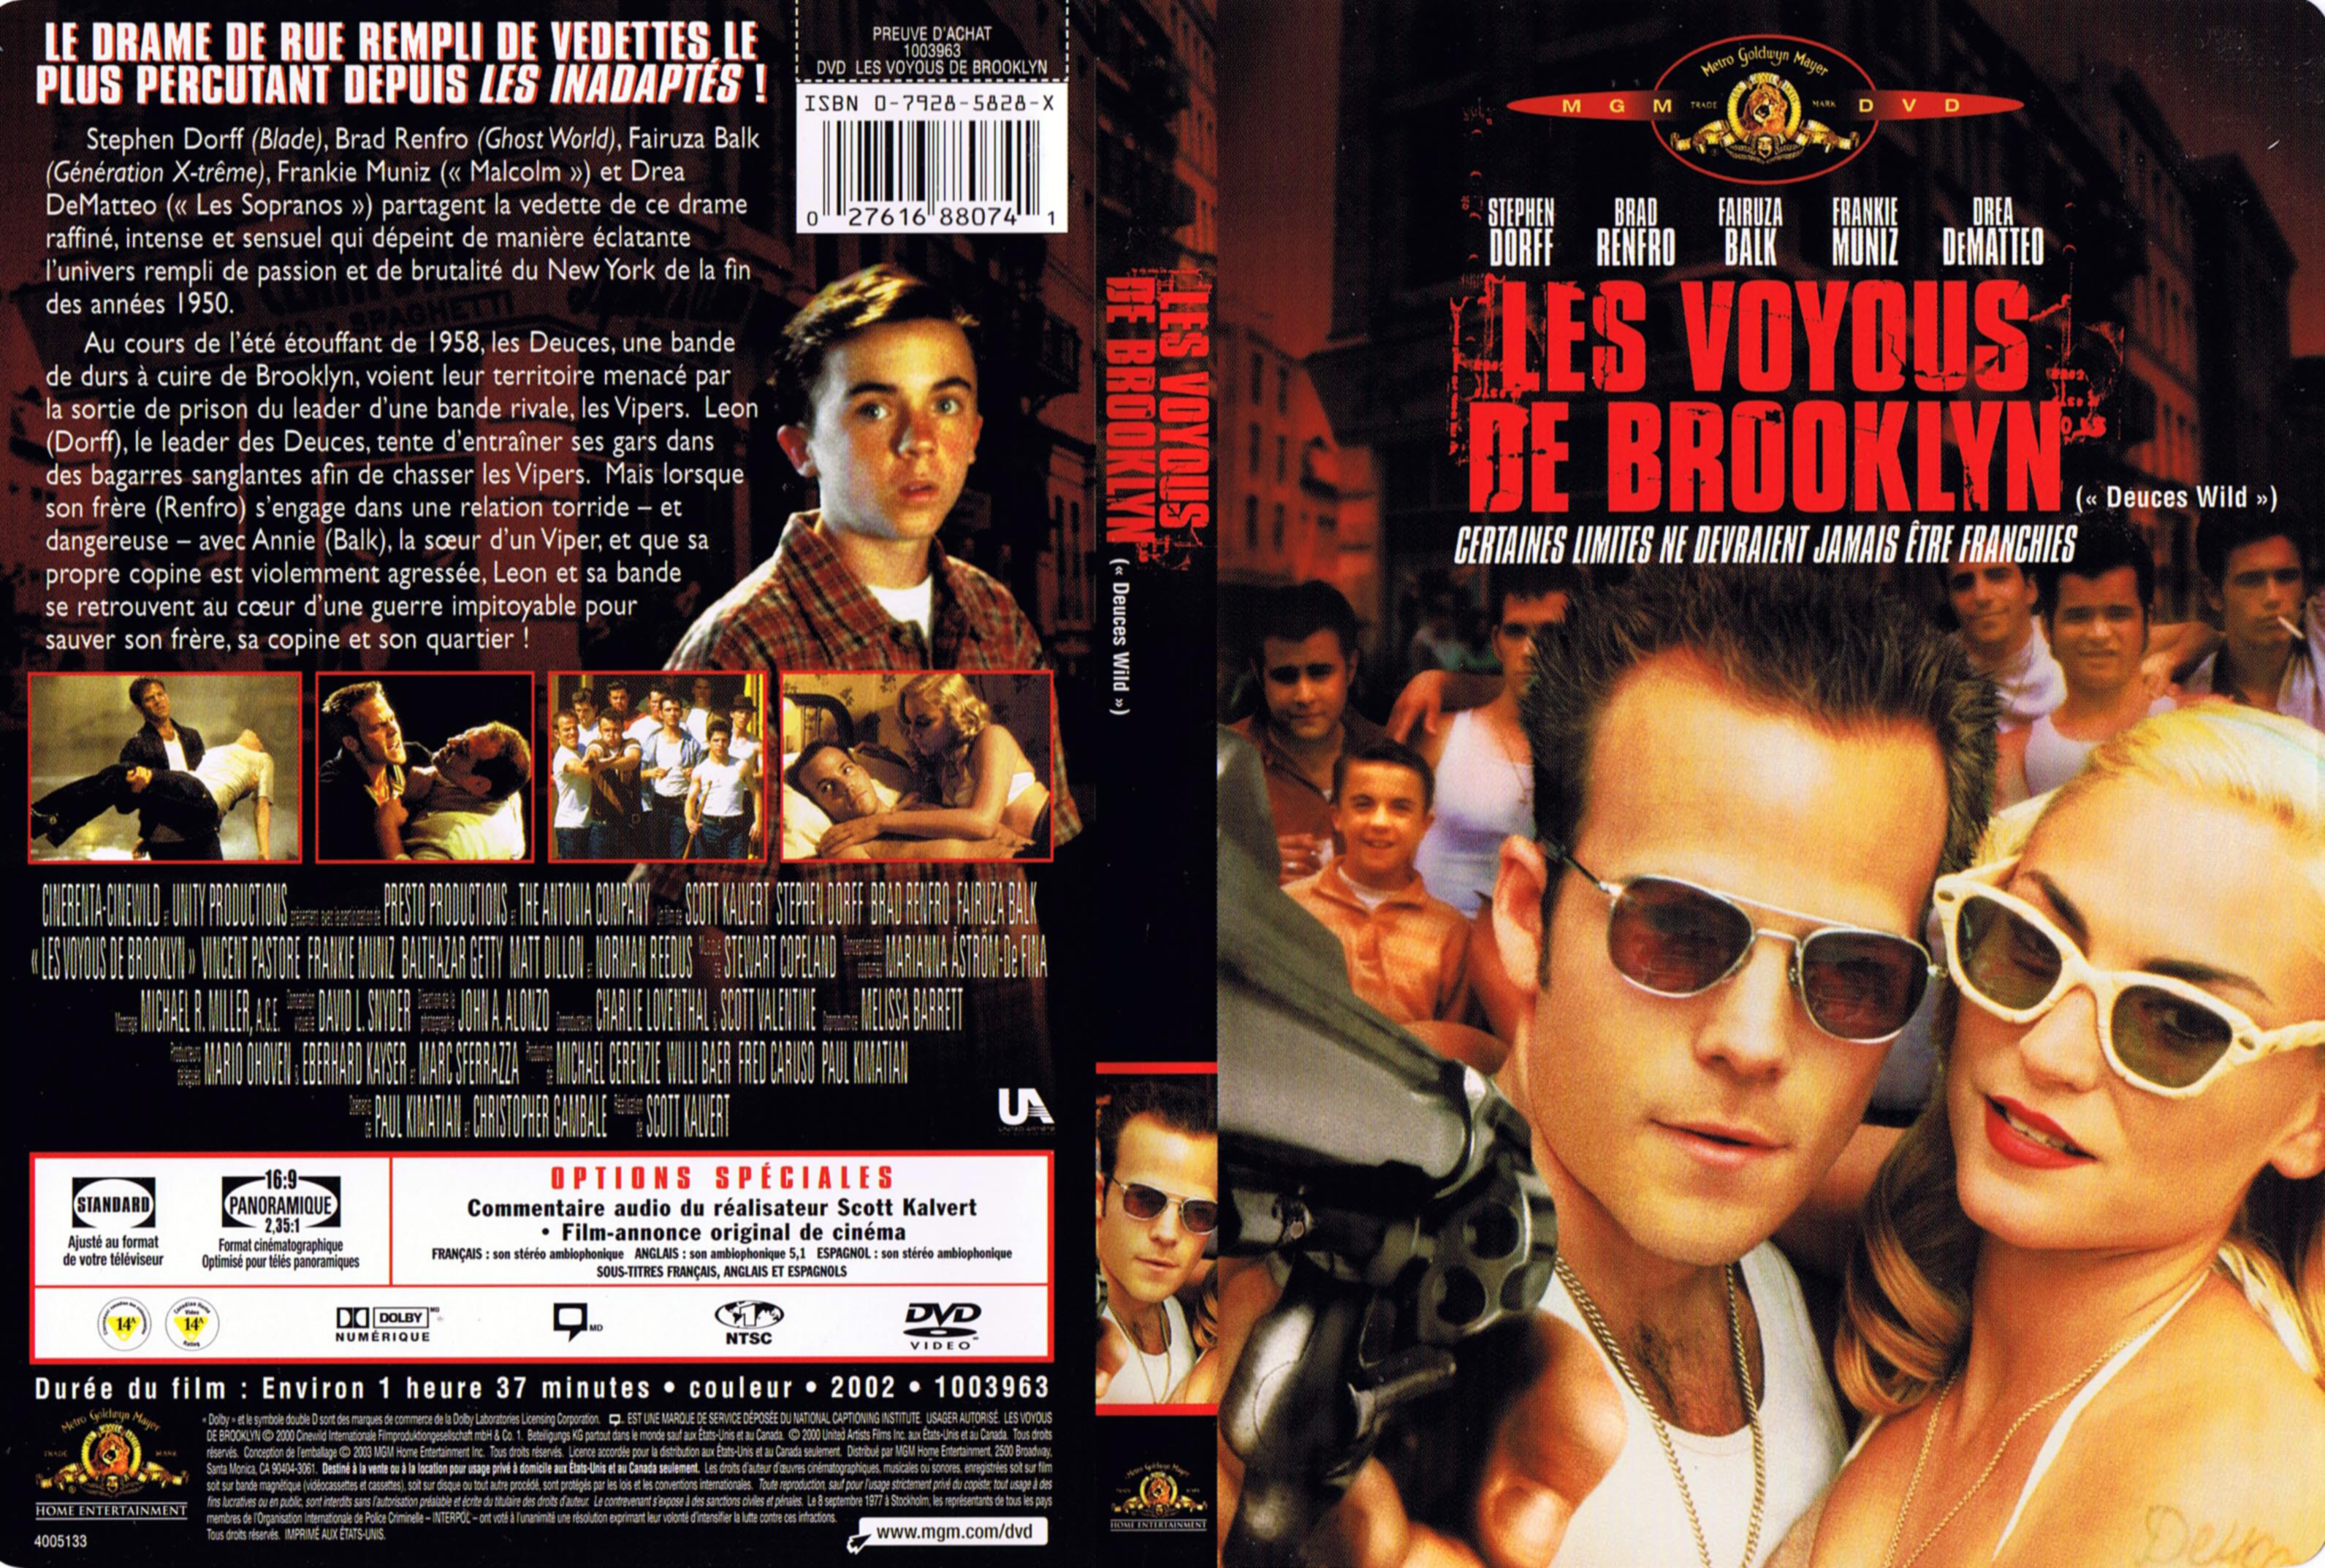 Jaquette DVD Les voyous de Brooklyn (Canadienne)